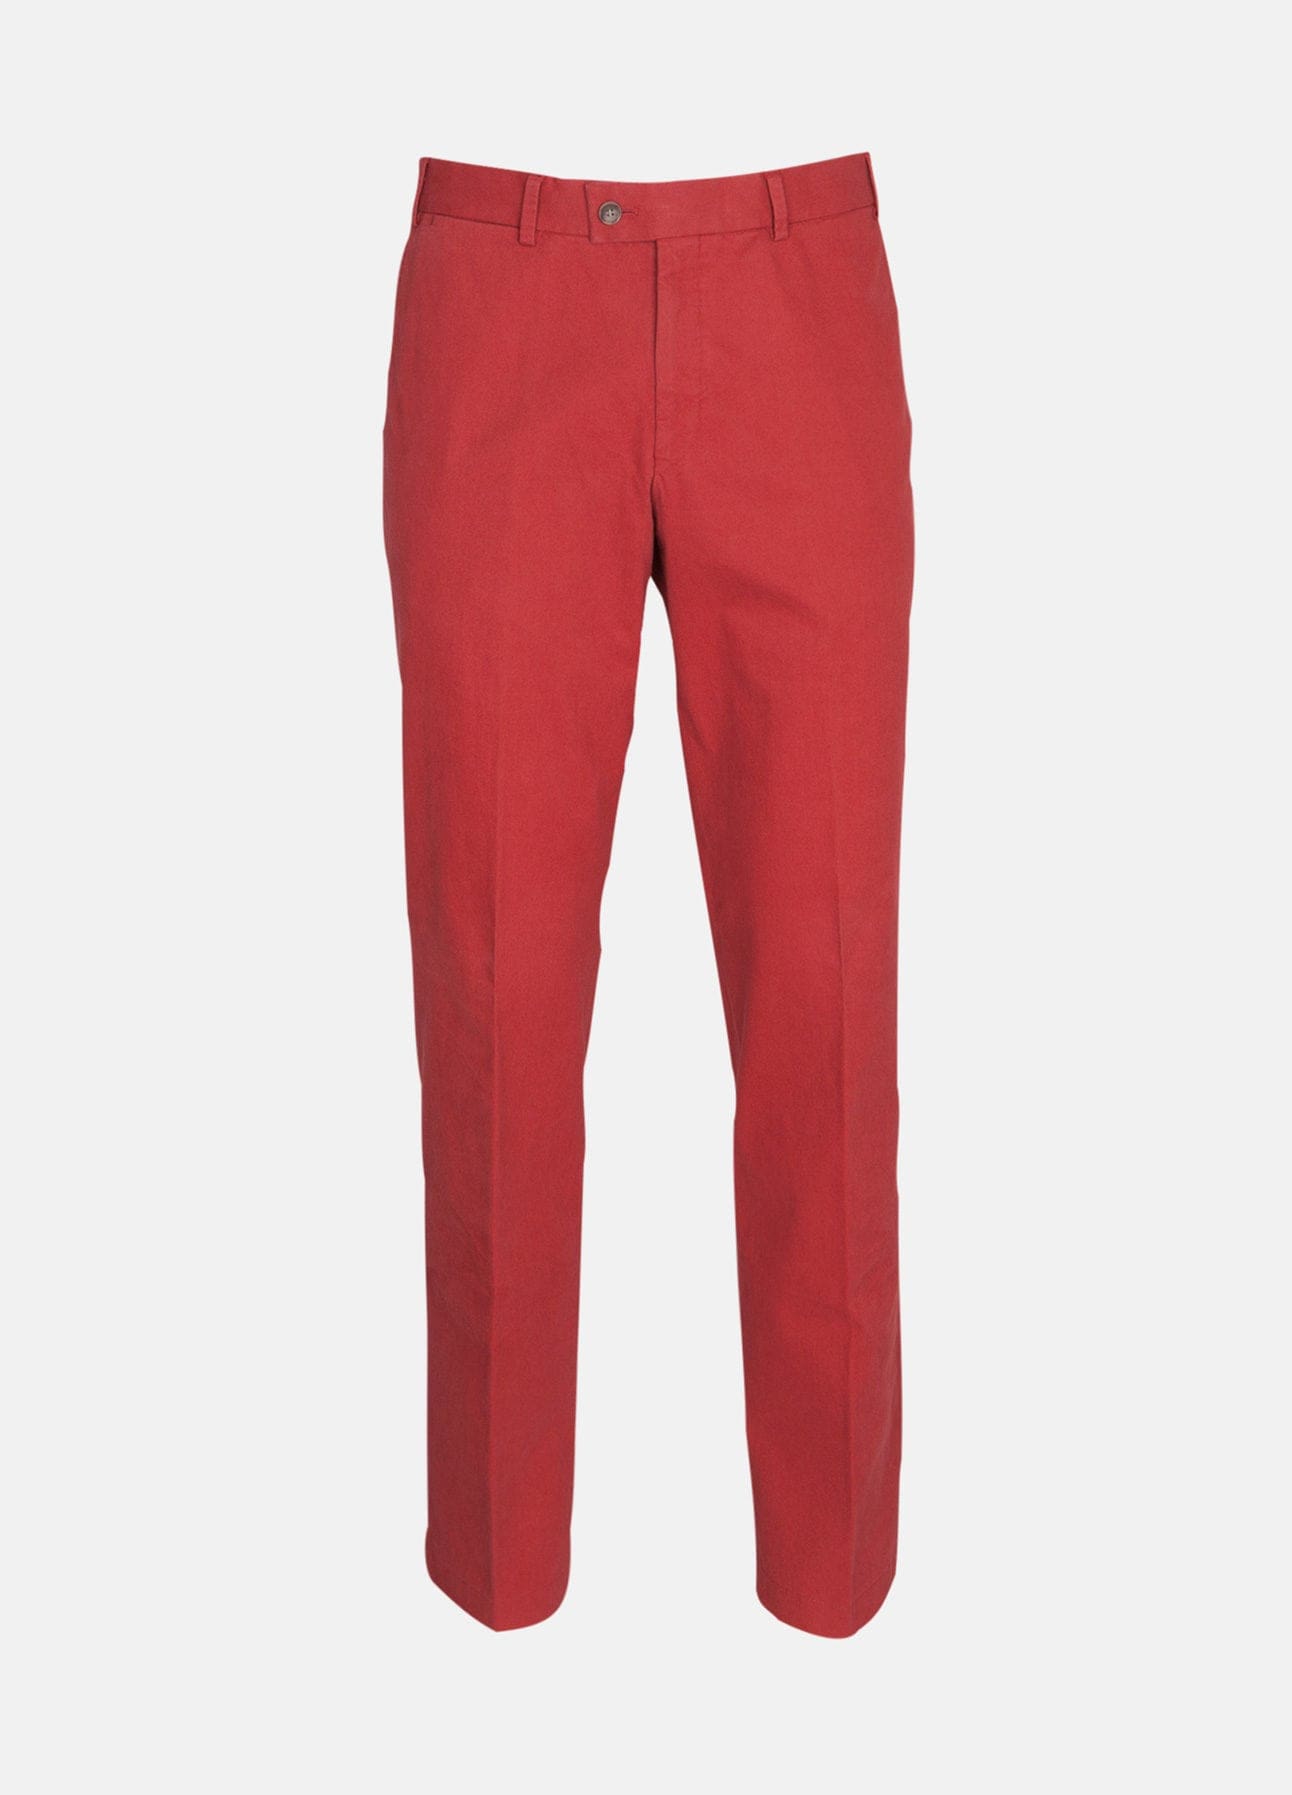 Røde Parma bukser fra Hiltl